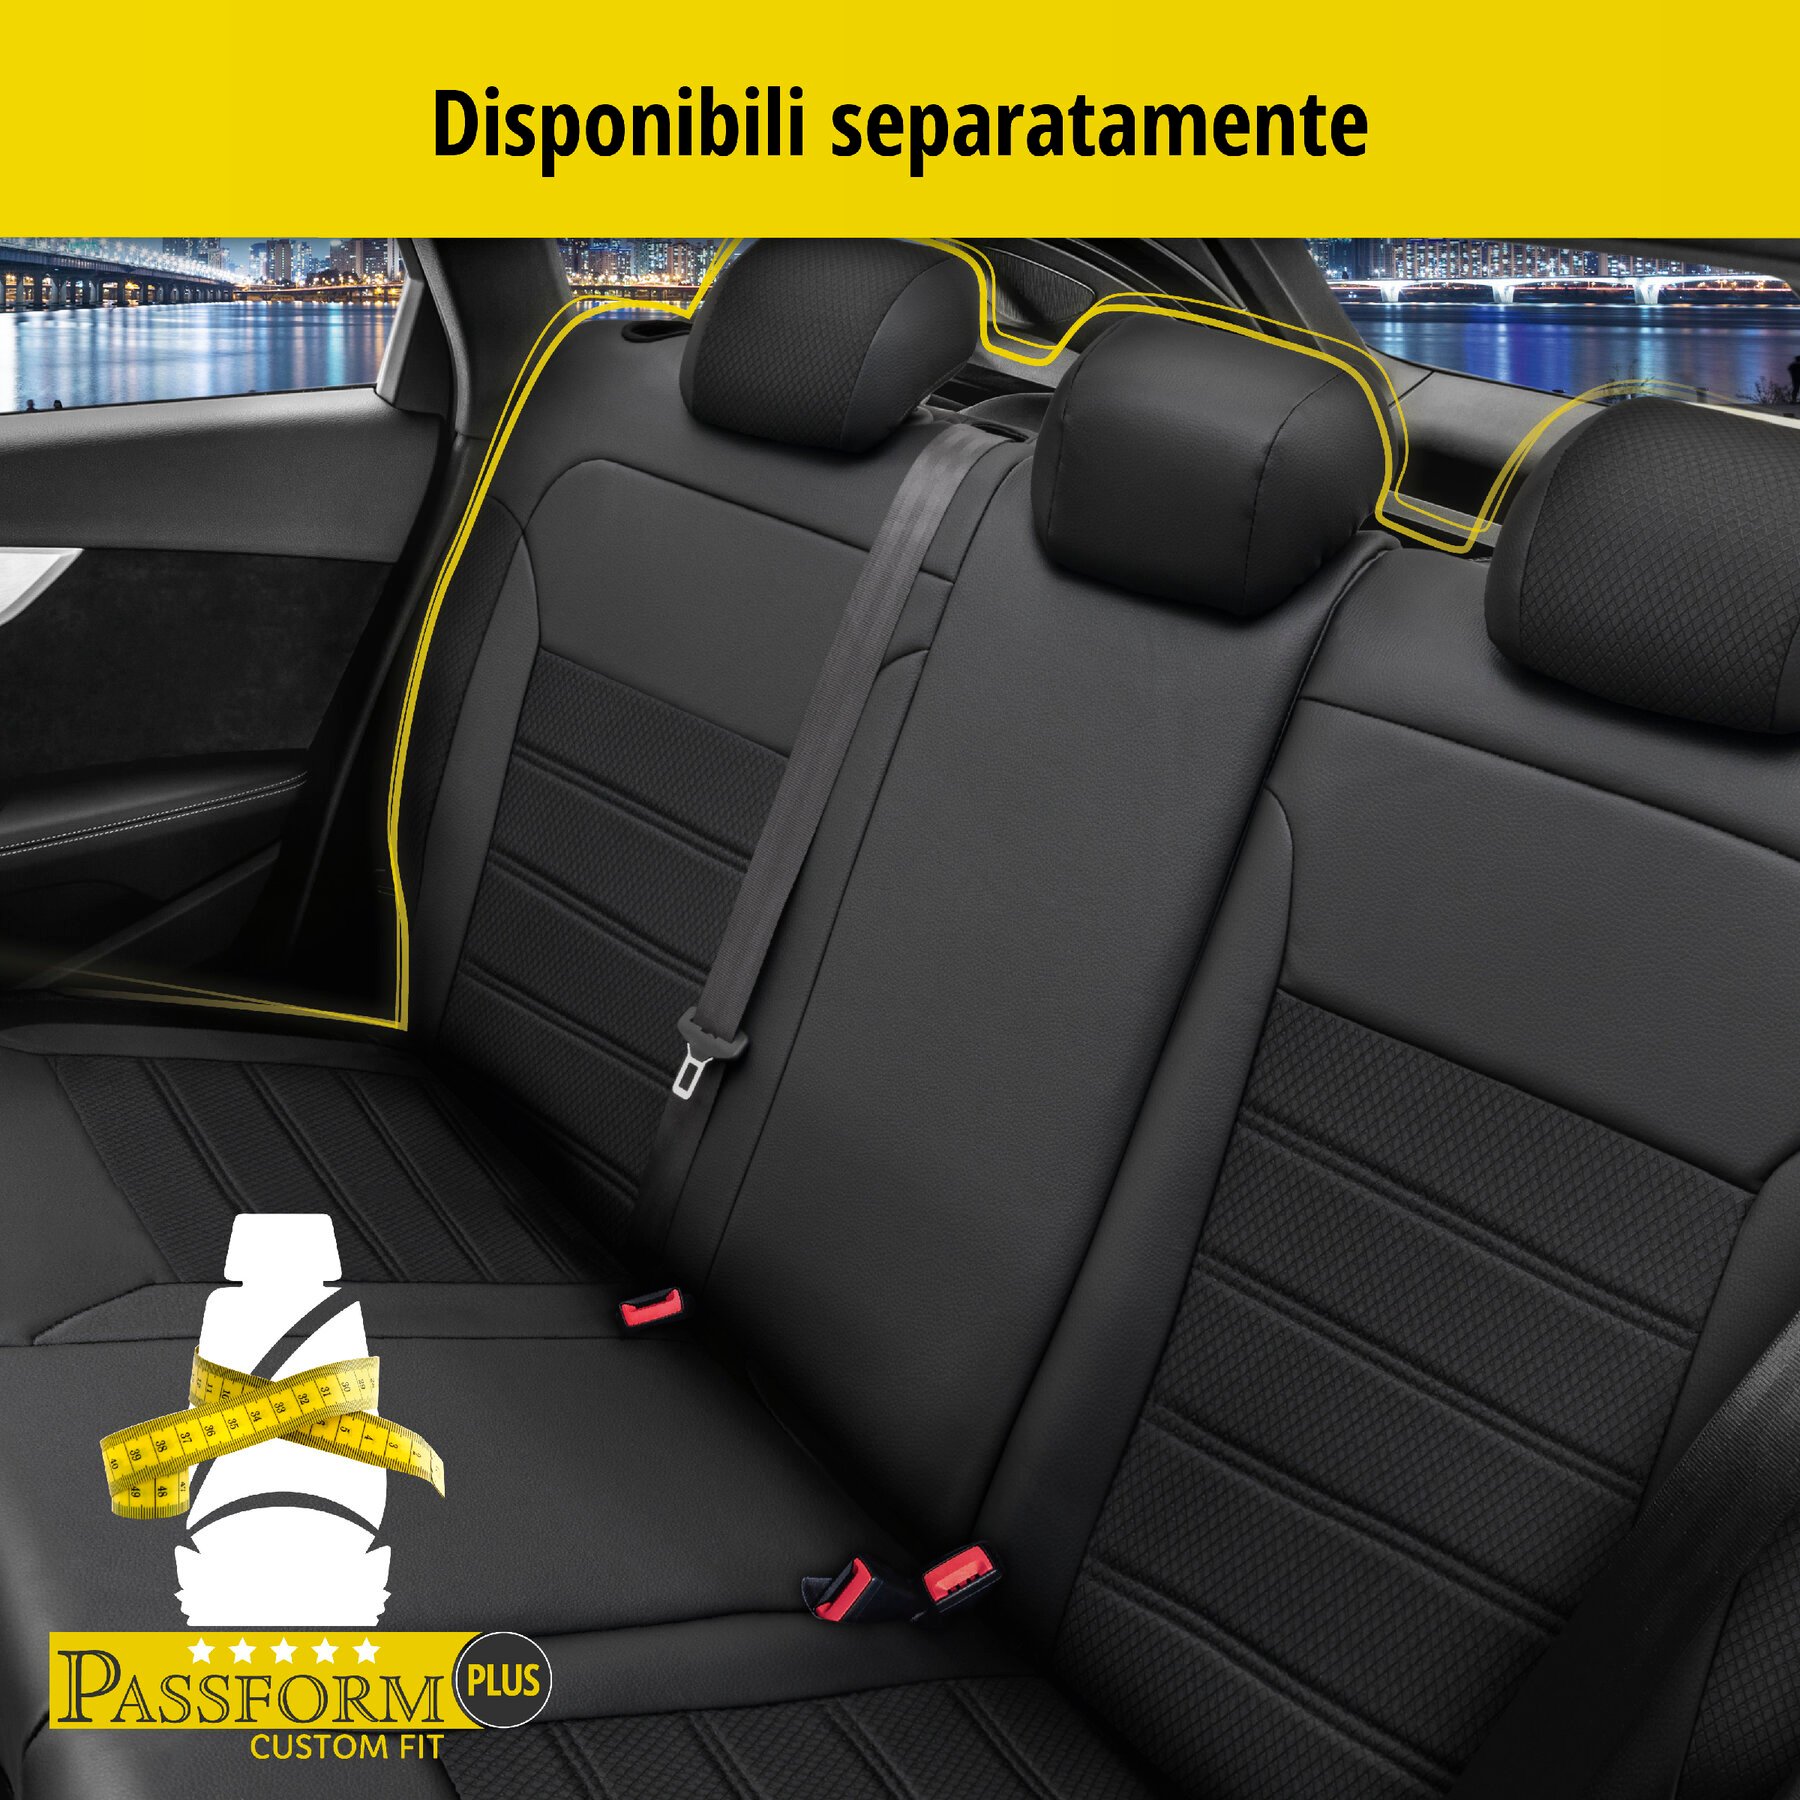 Coprisedili Aversa per Seat Ateca 04/2016-Oggi, 2 coprisedili singoli per sedili sportivi